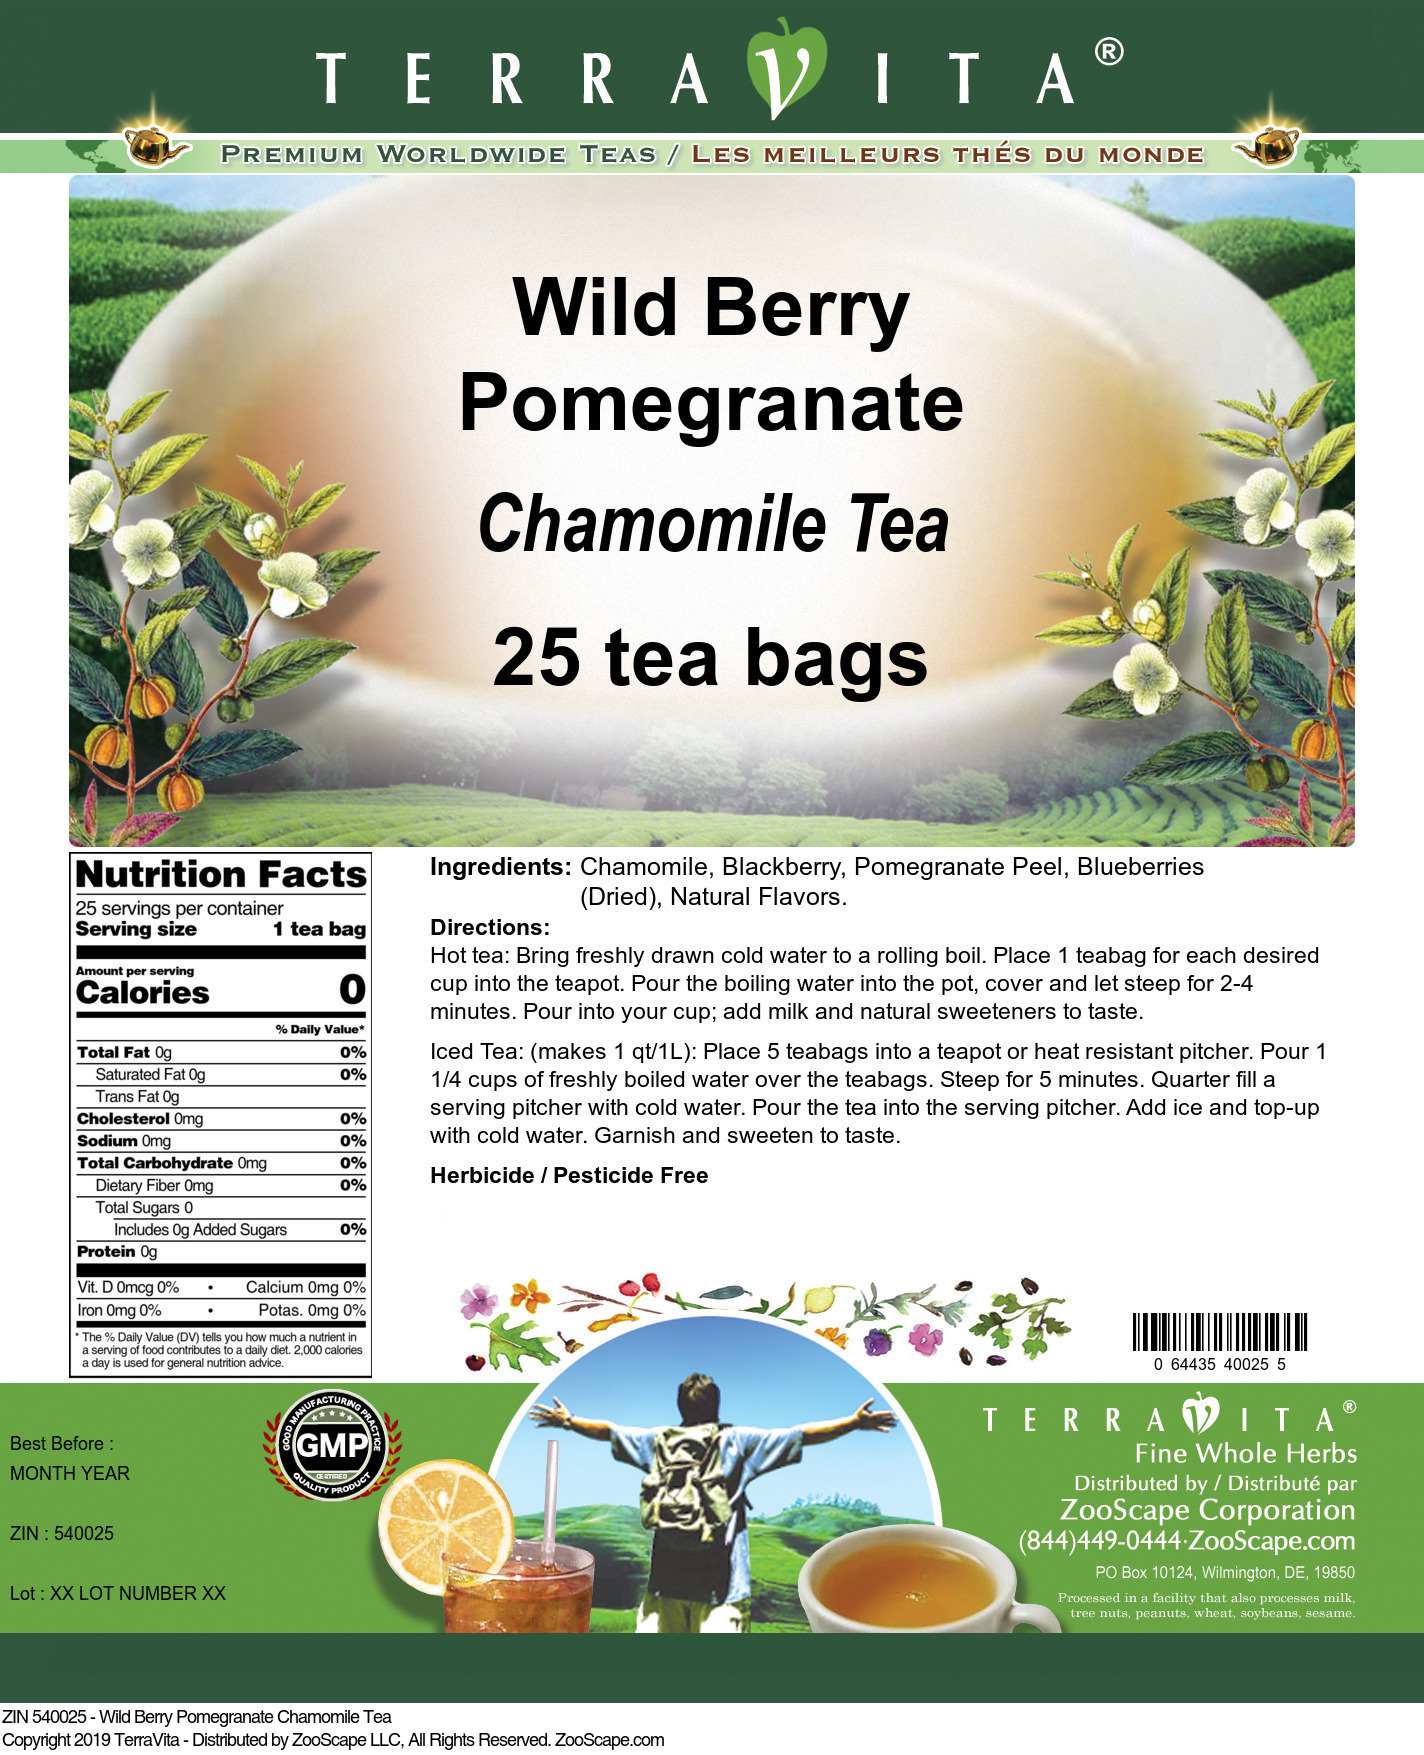 Wild Berry Pomegranate Chamomile Tea - Label